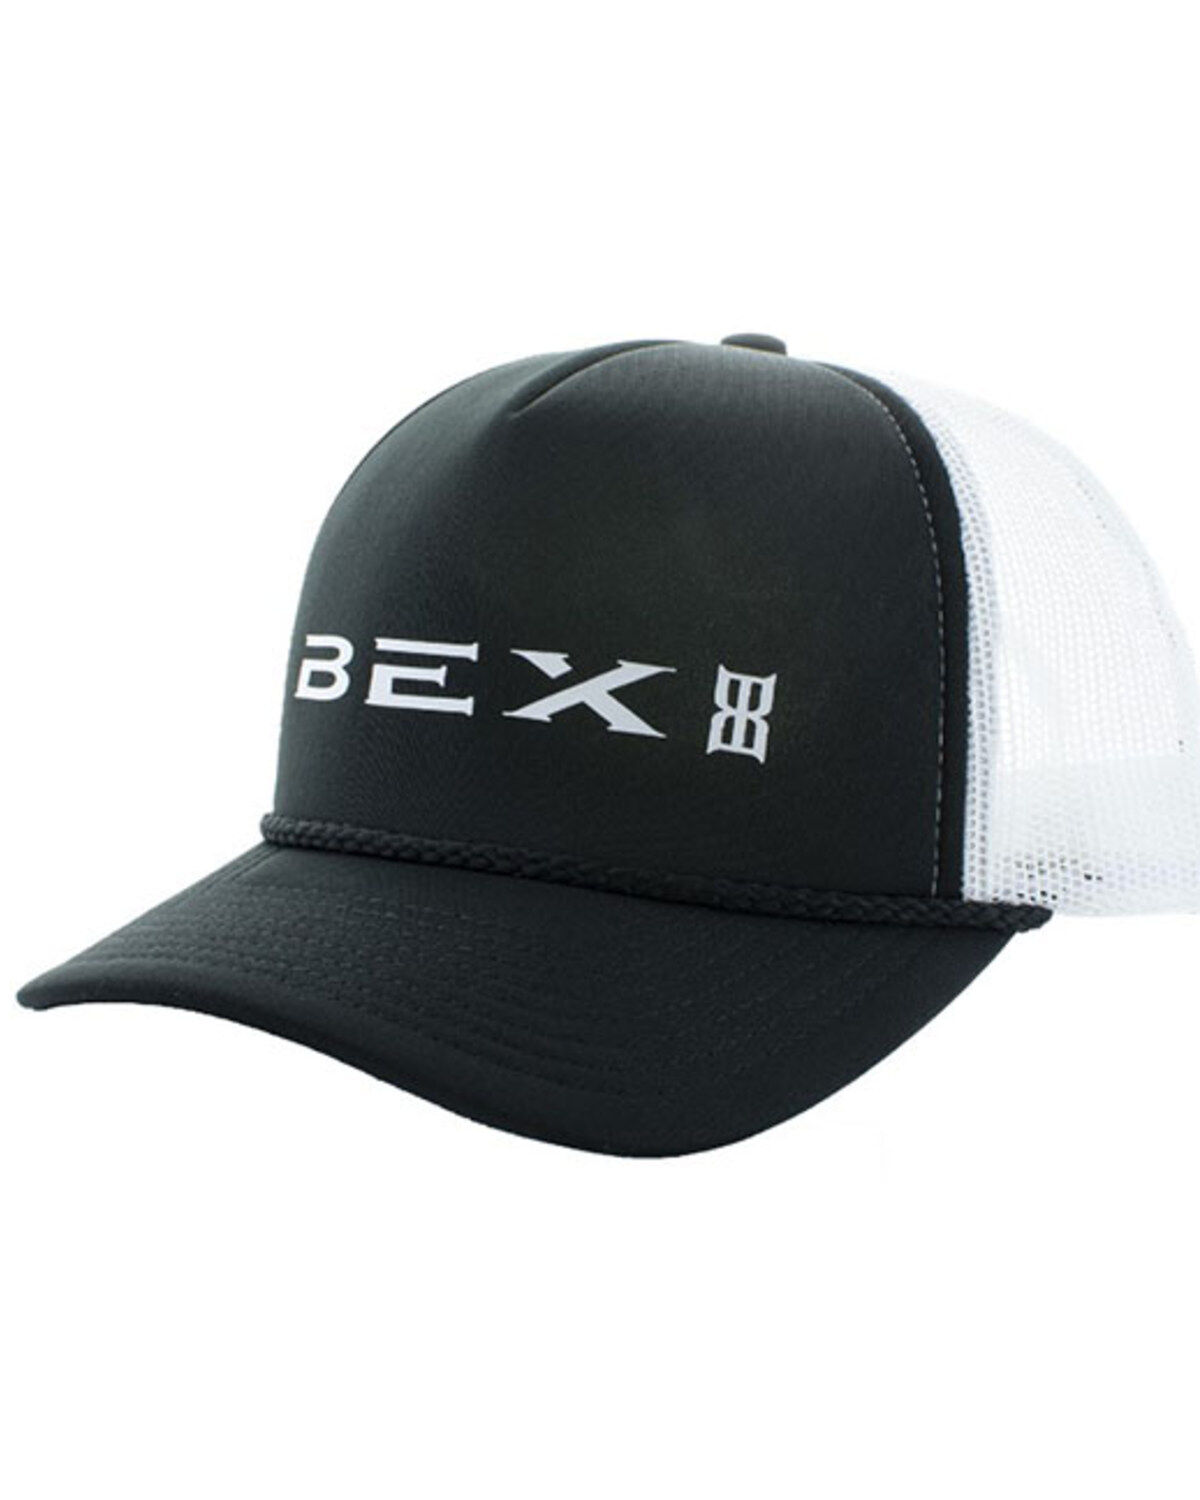 Bex Men's Legend Baseball Cap Grey OS